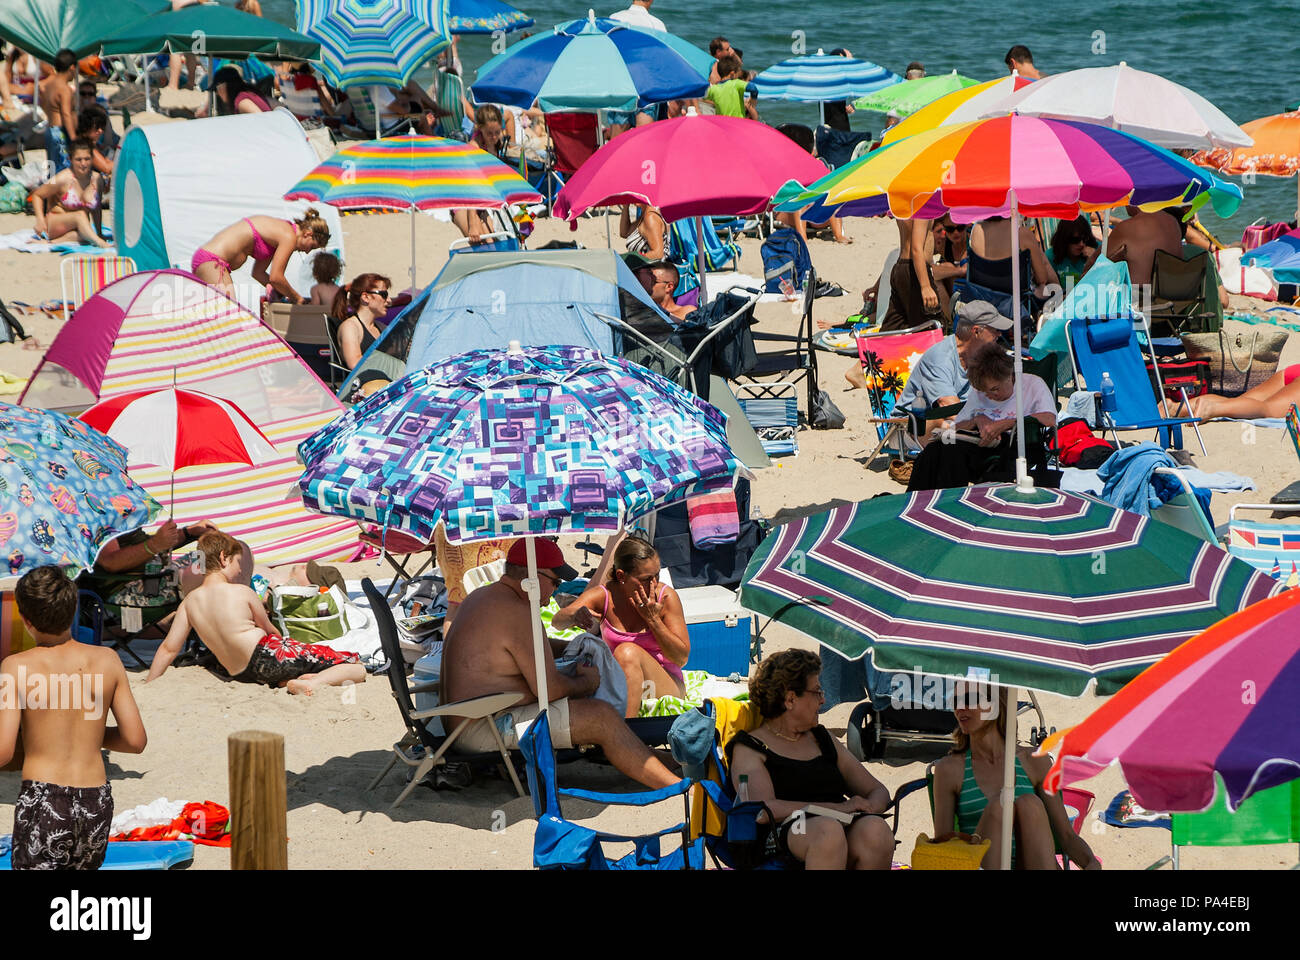 Affollata estate spiaggia con ombrelloni colorati, Nauset Beach, Cape Cod National Seashore, Cape Cod, Massachusetts, STATI UNITI D'AMERICA. Foto Stock